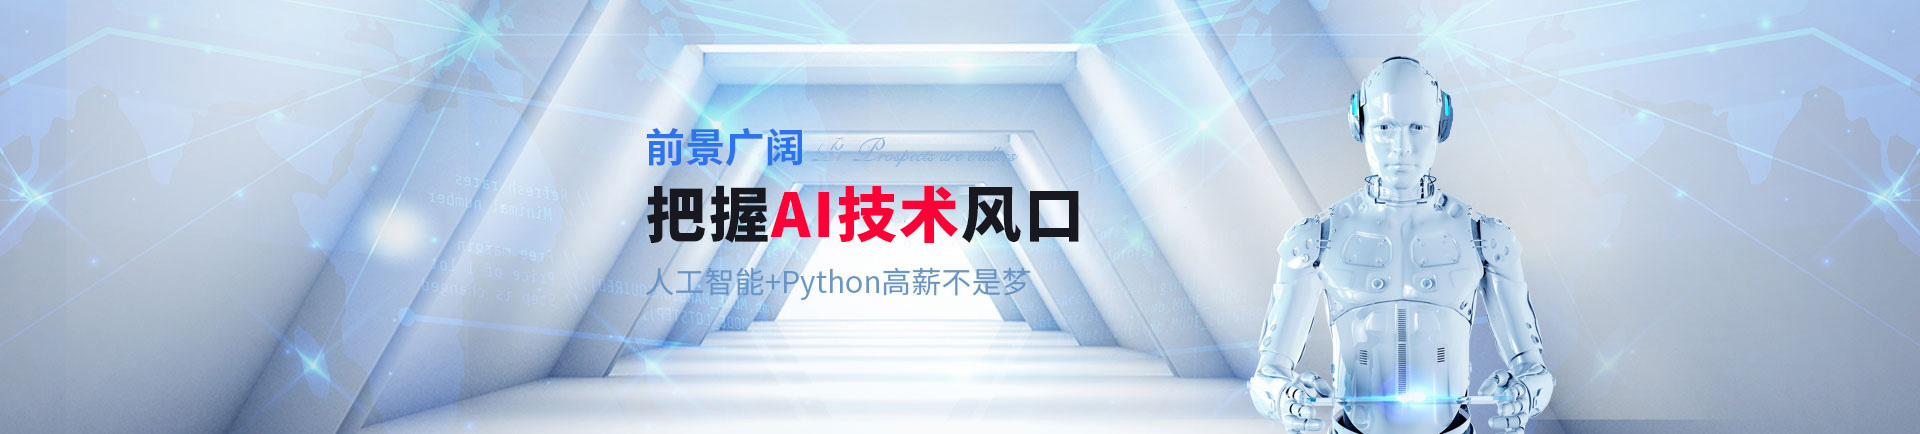 登顶AI技术风口巅峰 人工智能+Python挑战高薪-beijing